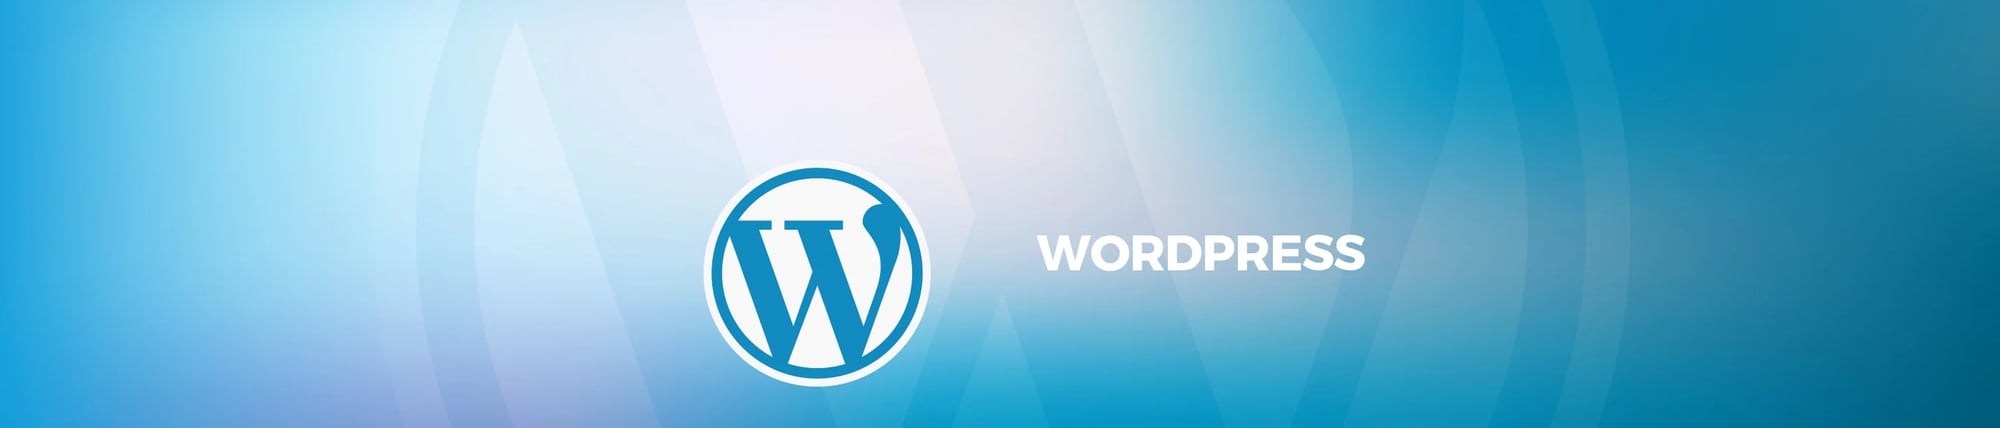 Wordpress entwicklung - W-4 Agentur Schweiz 